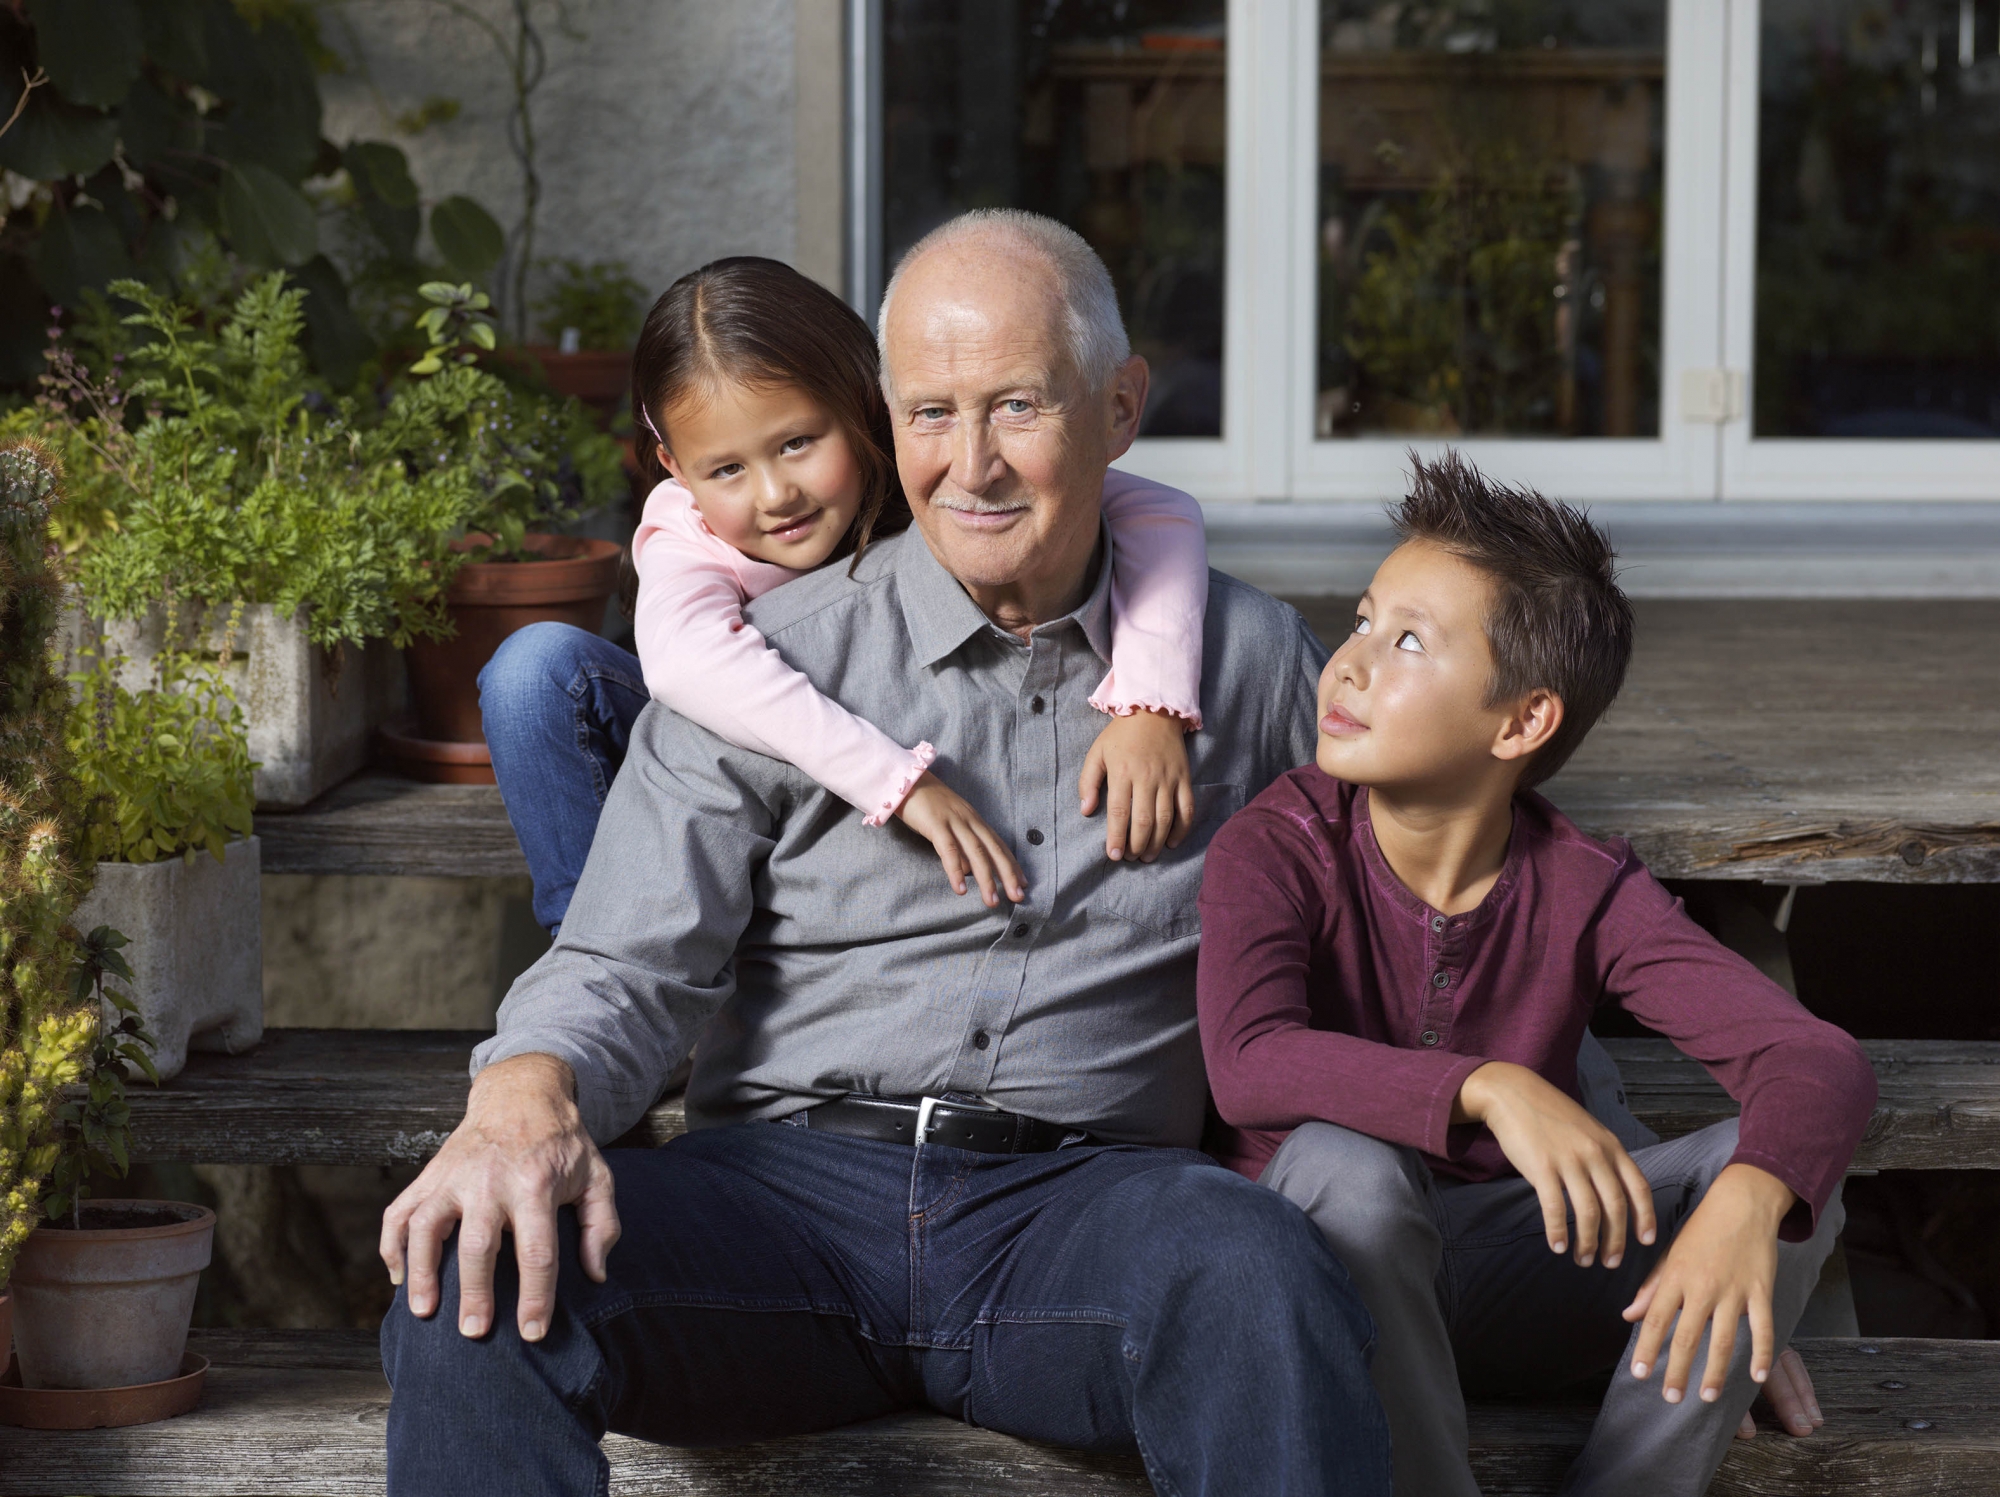 Garder ses petits-enfants permet de rester actif et aider à rester en bonne santé psychique.